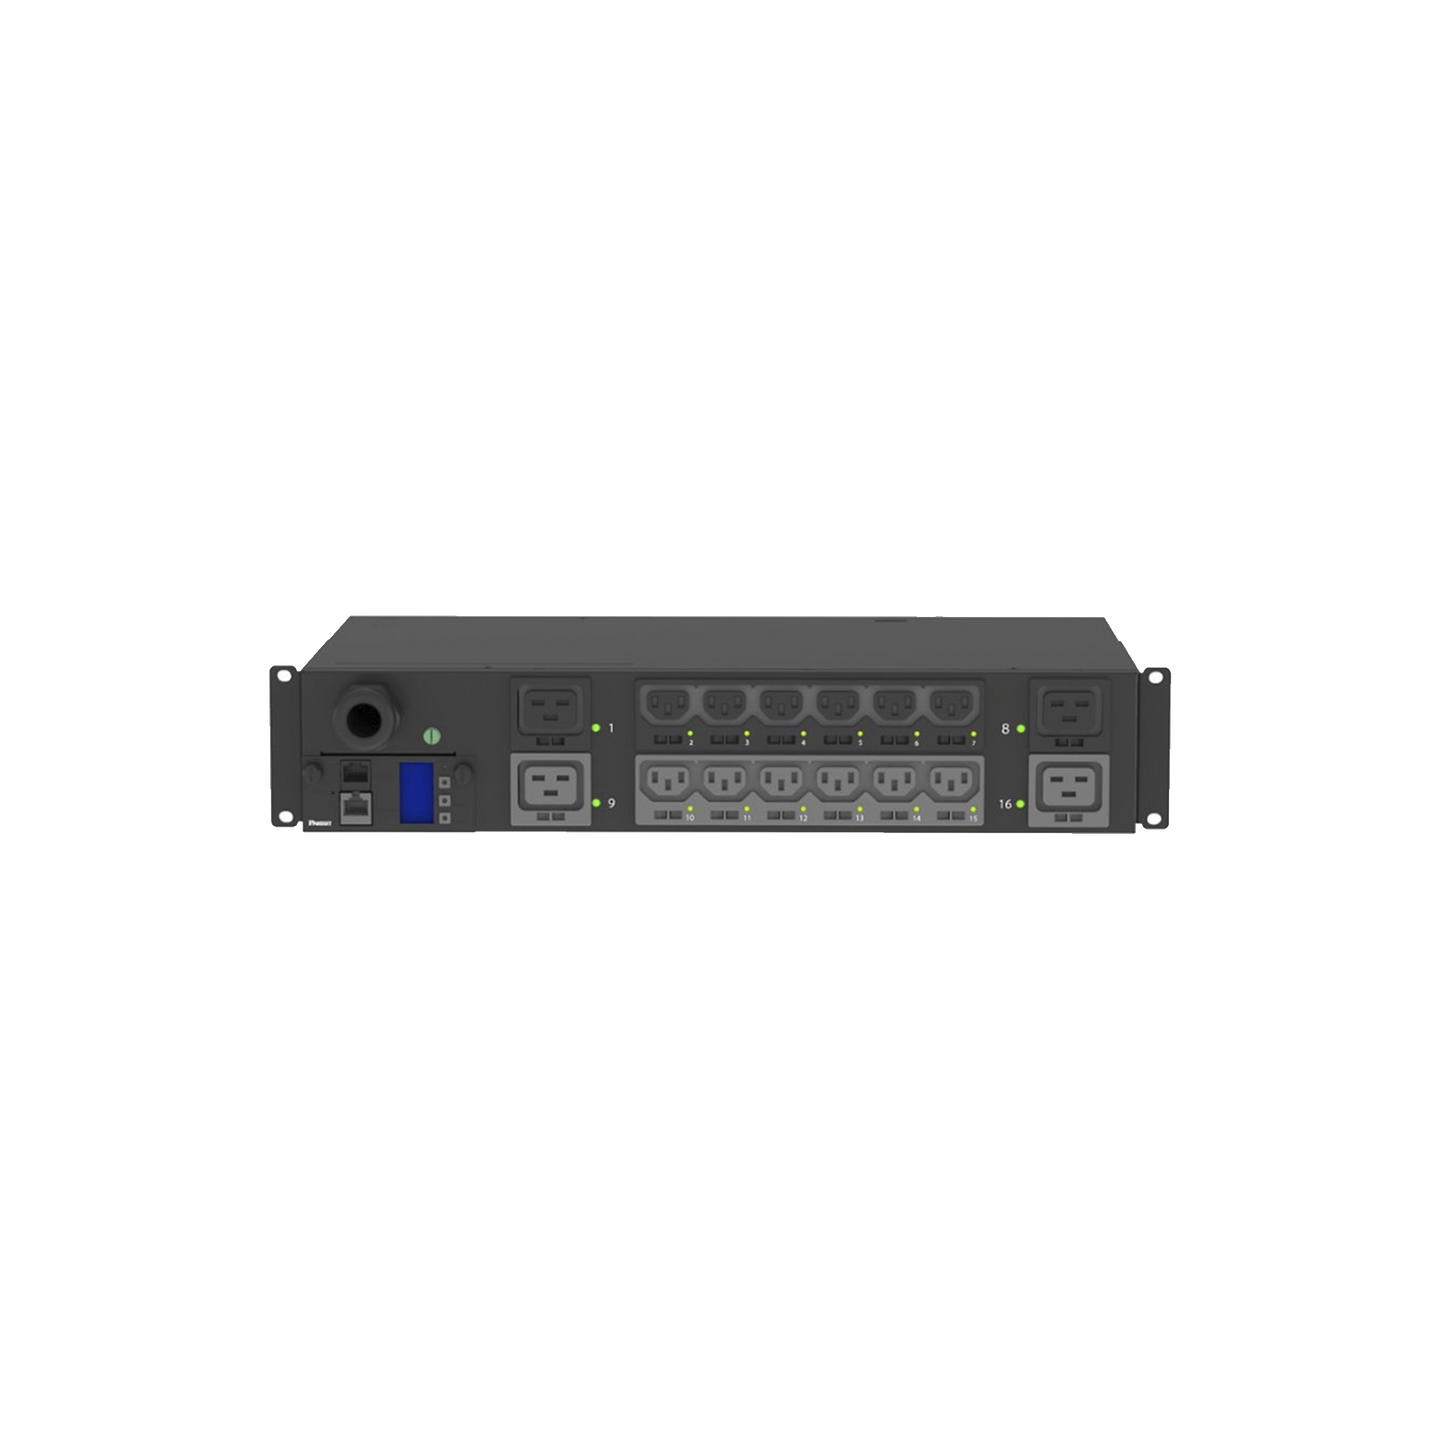 PDU Switchable y Monitoreable por Toma (MS) para Distribución de Energía, Enchufe de Entrada NEMA L6-30P, Con 12 Salidas C13 y 4 Salidas C19, Horizontal 19in, 208 Vca, 30 Amp, 2UR